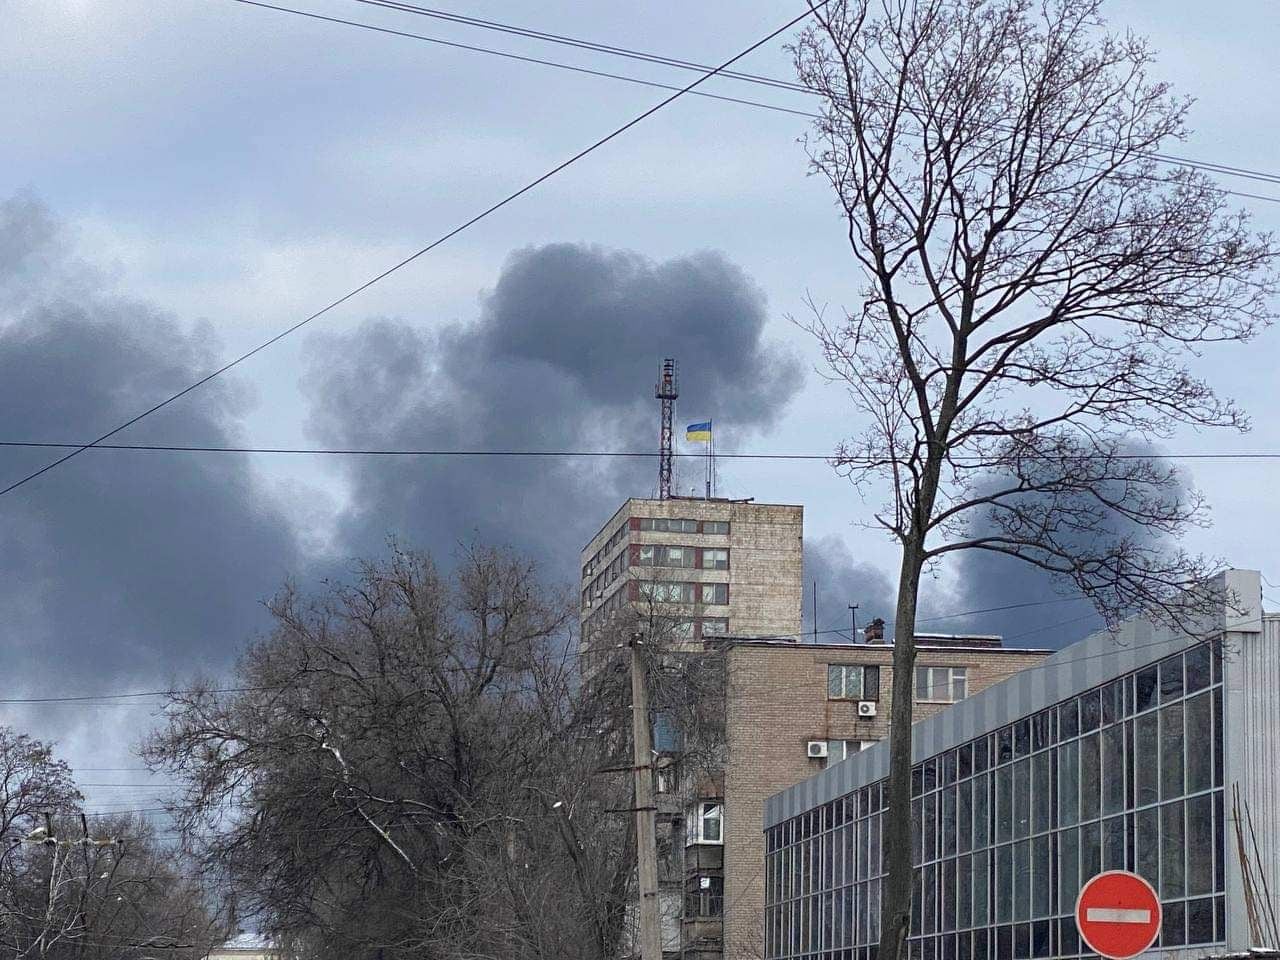 Columnas de humo salen de una zona residencial en la ciudad de Mariúpol, en el sureste de Ucrania, asediada desde hace tres semanas por las tropas rusas, en una imagen tomada el pasado sábado 19 de marzo. EFE/Galyna Balabanova 